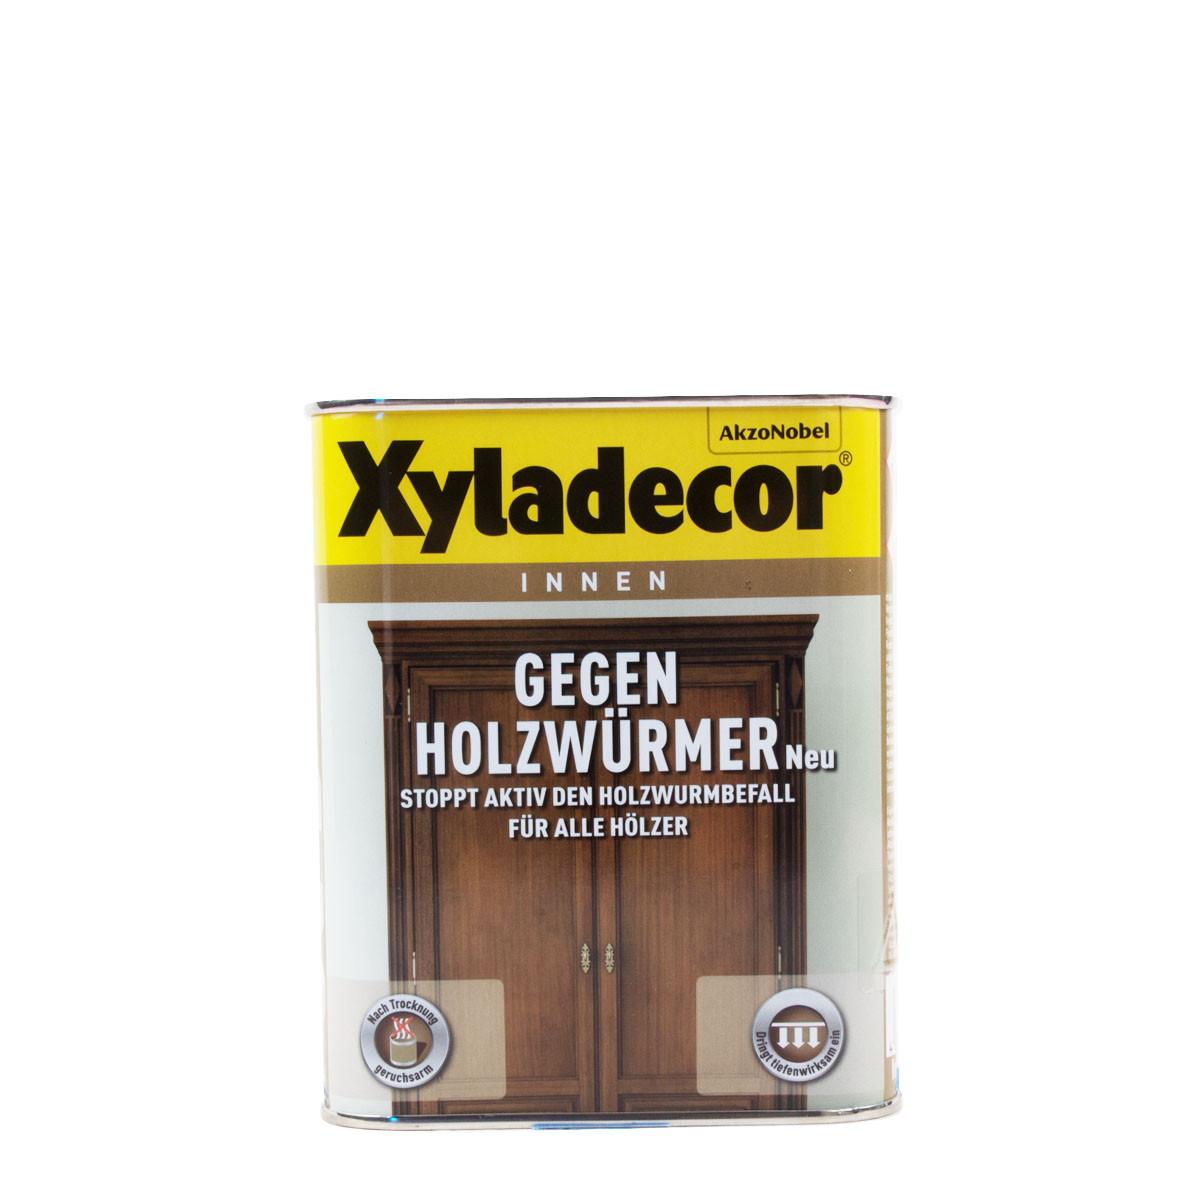 Xyladecor Gegen Holzwürmer 750ml, Holzwurmtod